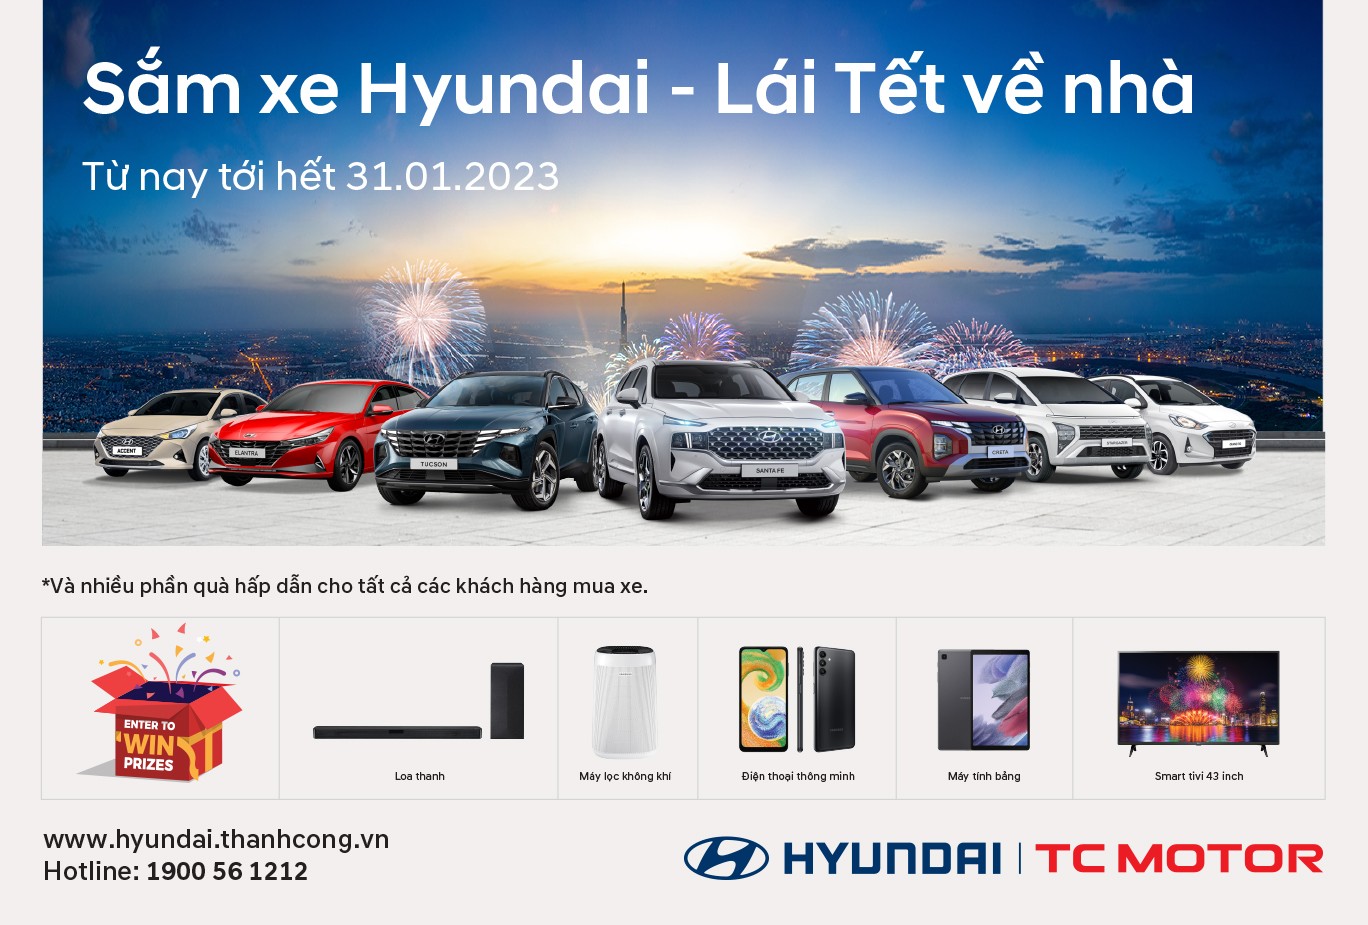 Hyundai Thành Công Việt Nam tung ưu đãi lớn cho khách mua xe, cao nhất lên đến 50% phí trước bạ.